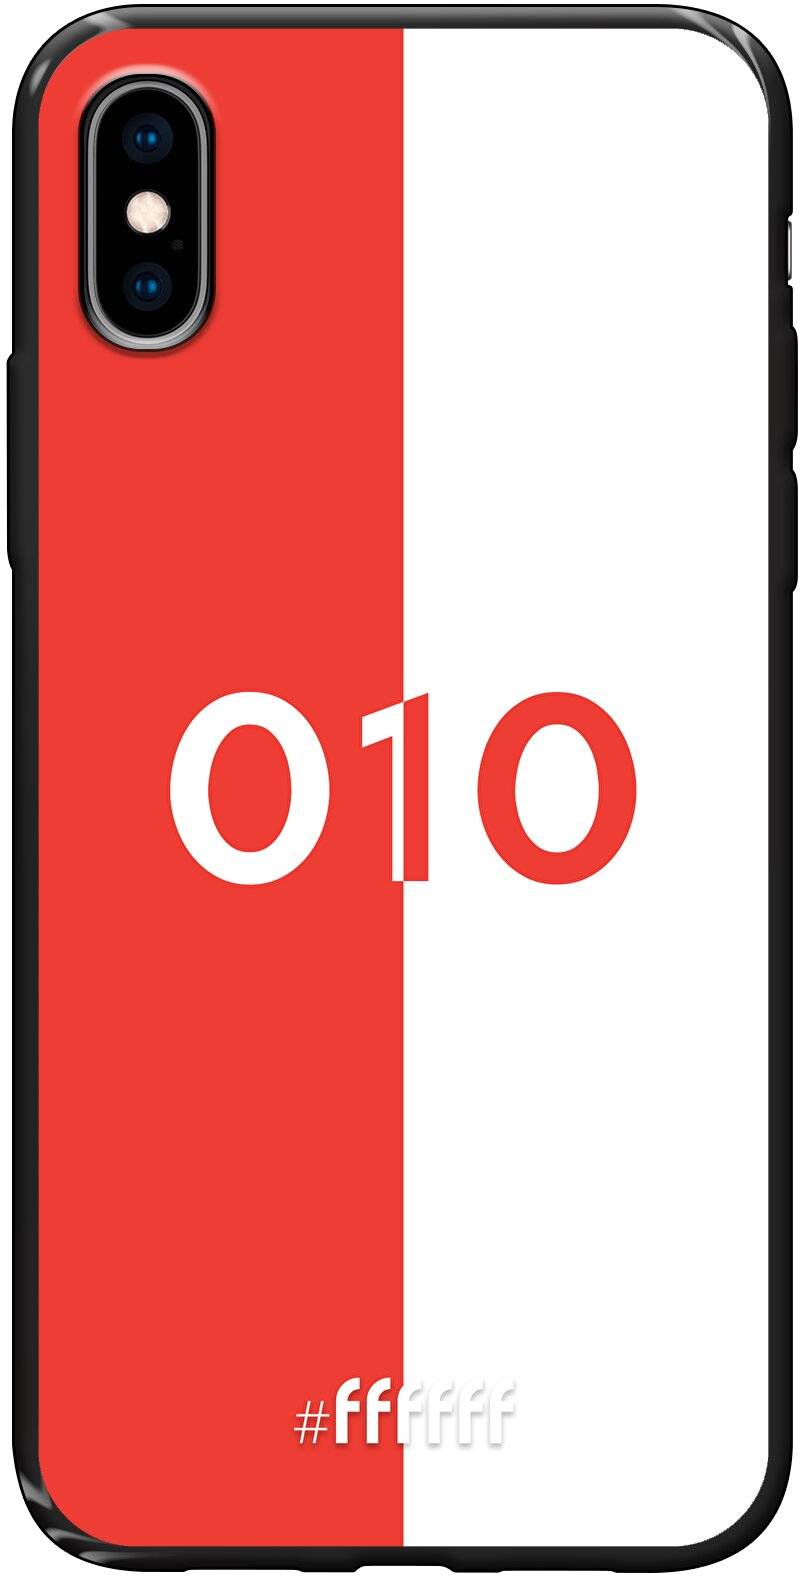 Feyenoord - 010 iPhone Xs